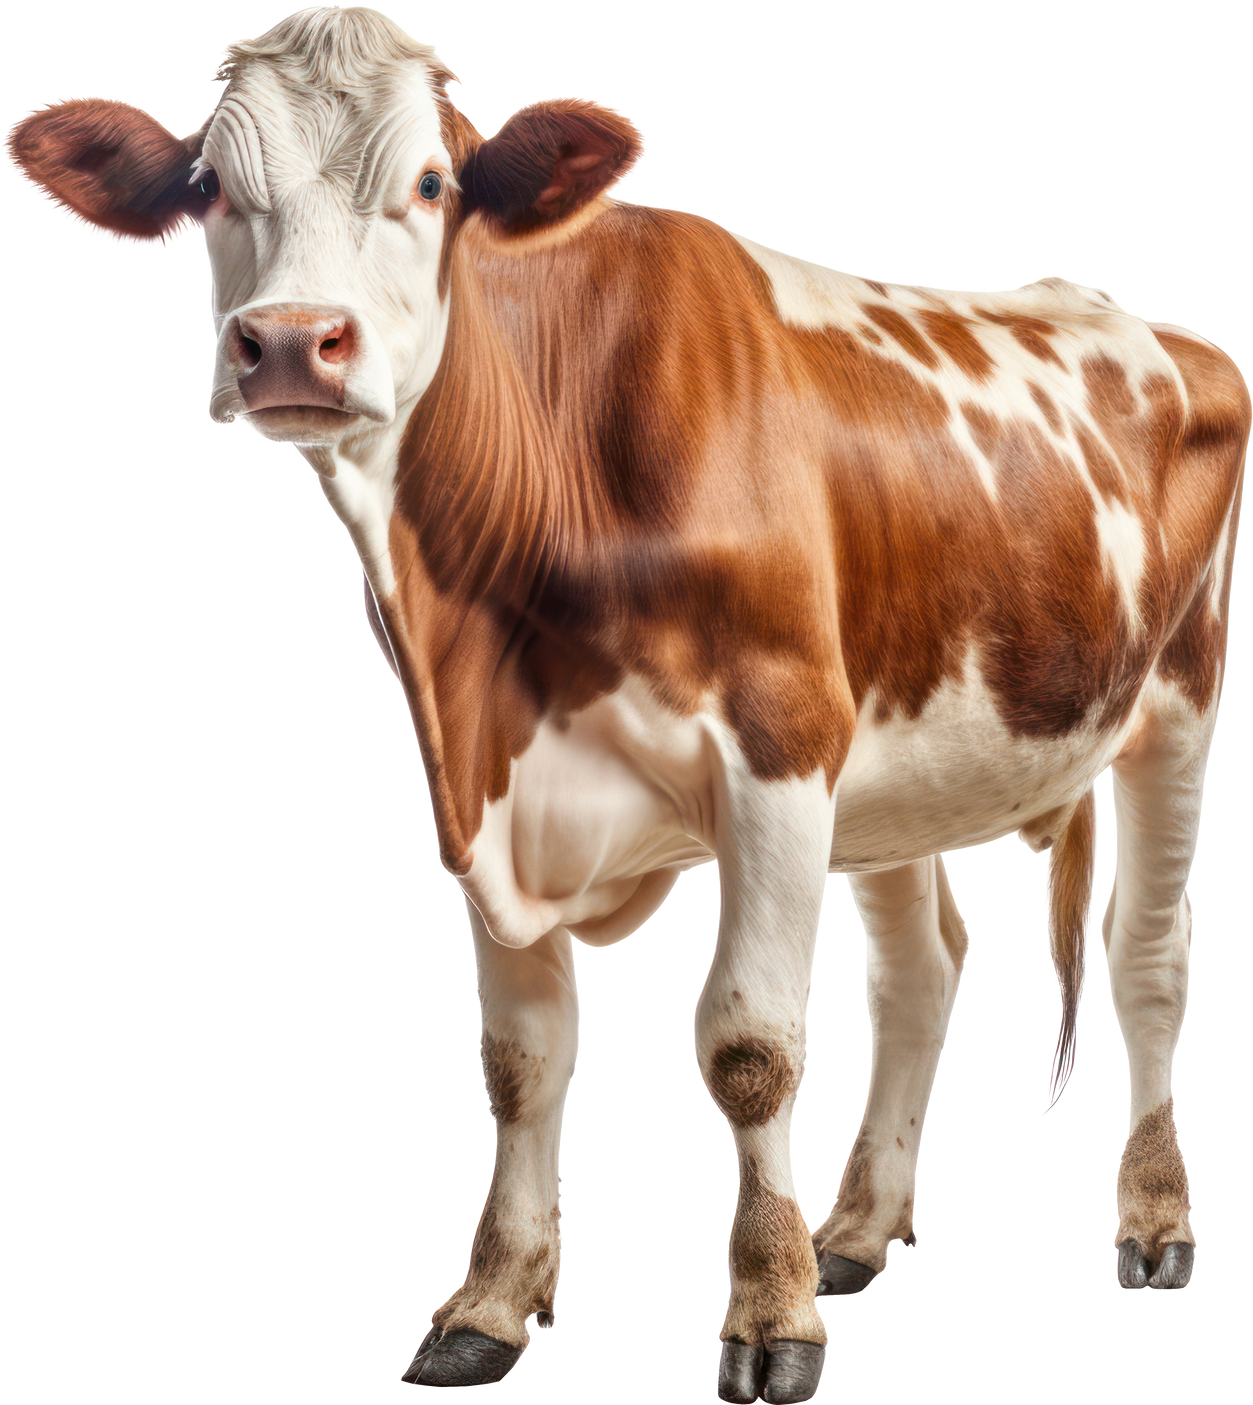 Cow cutout